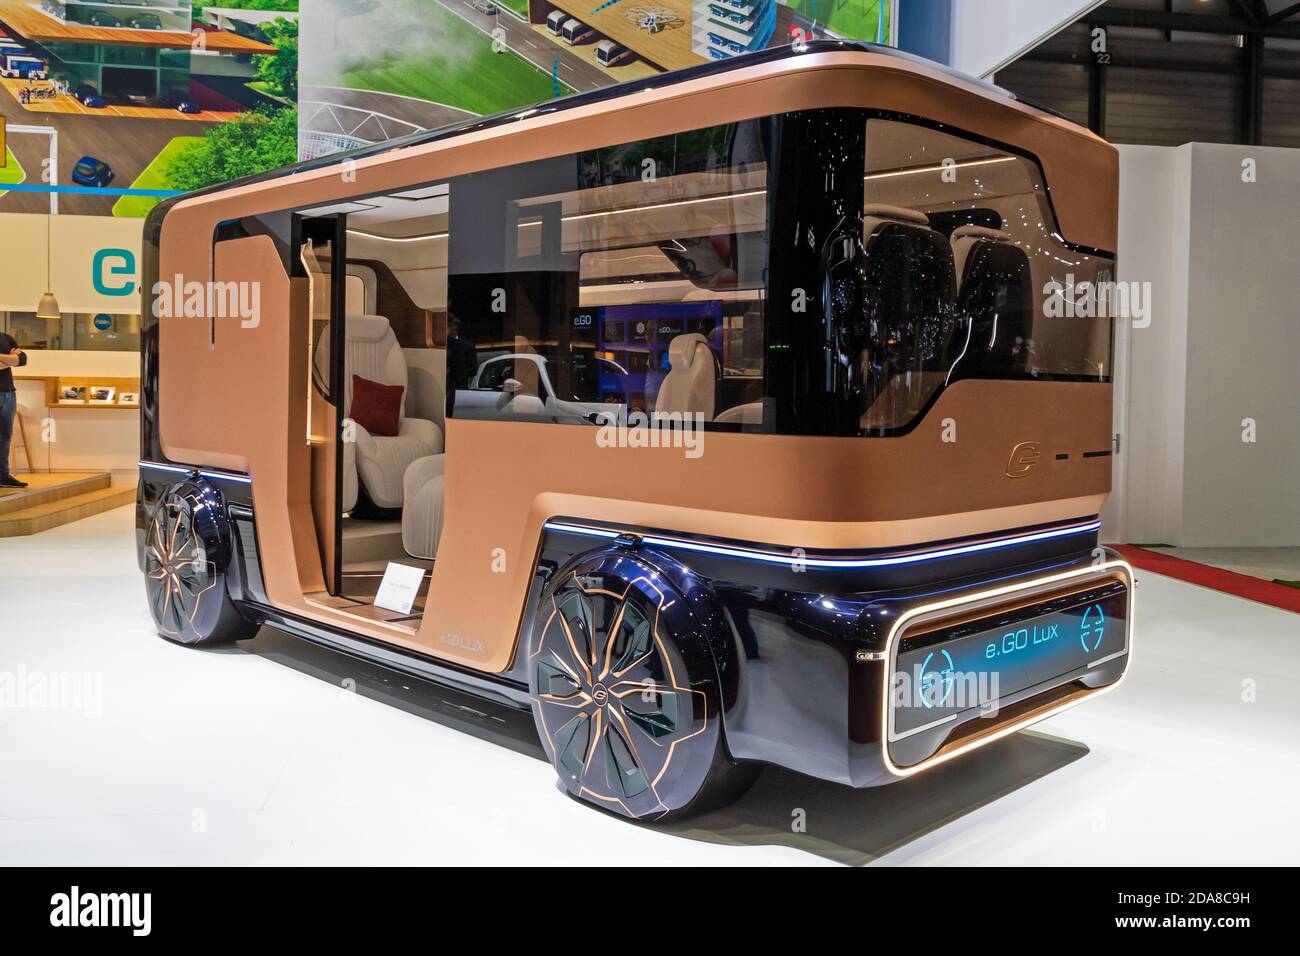 Le bus électrique d'E.GO Lux a été présenté au 89e salon international de l'automobile de Genève. Genève, Suisse - 6 mars 2019. Banque D'Images